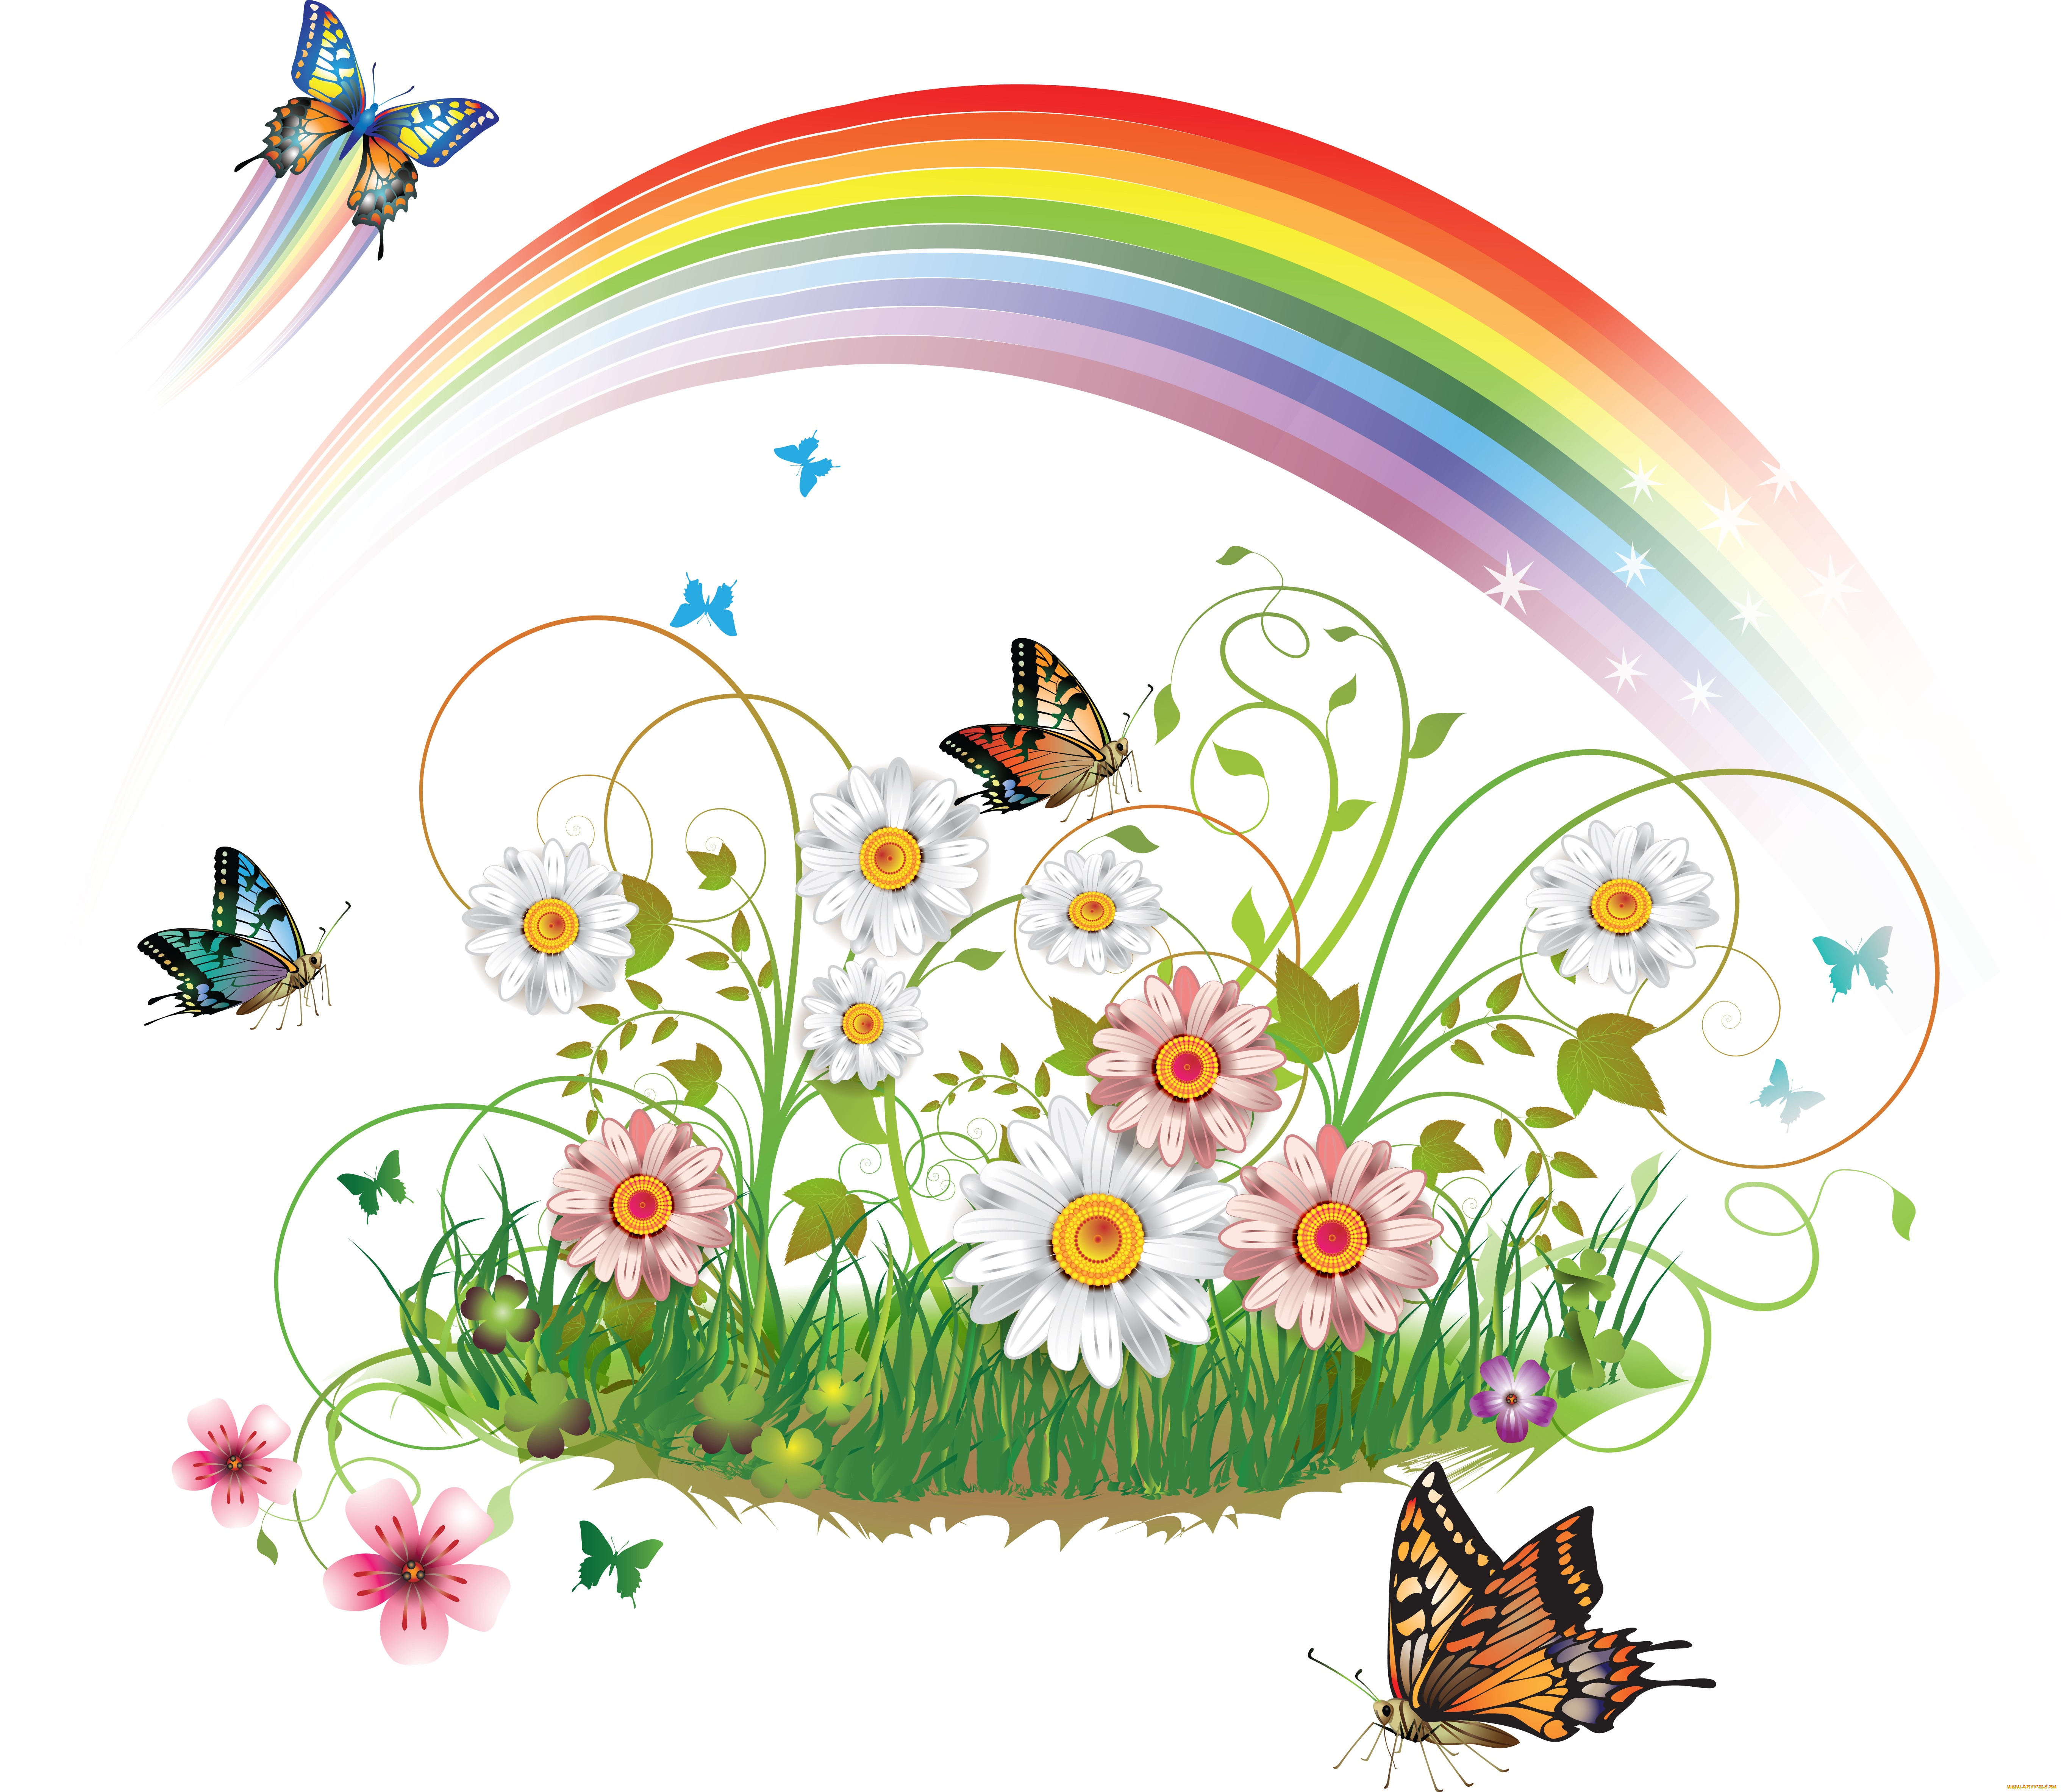 полянка с цветами картинки для детей